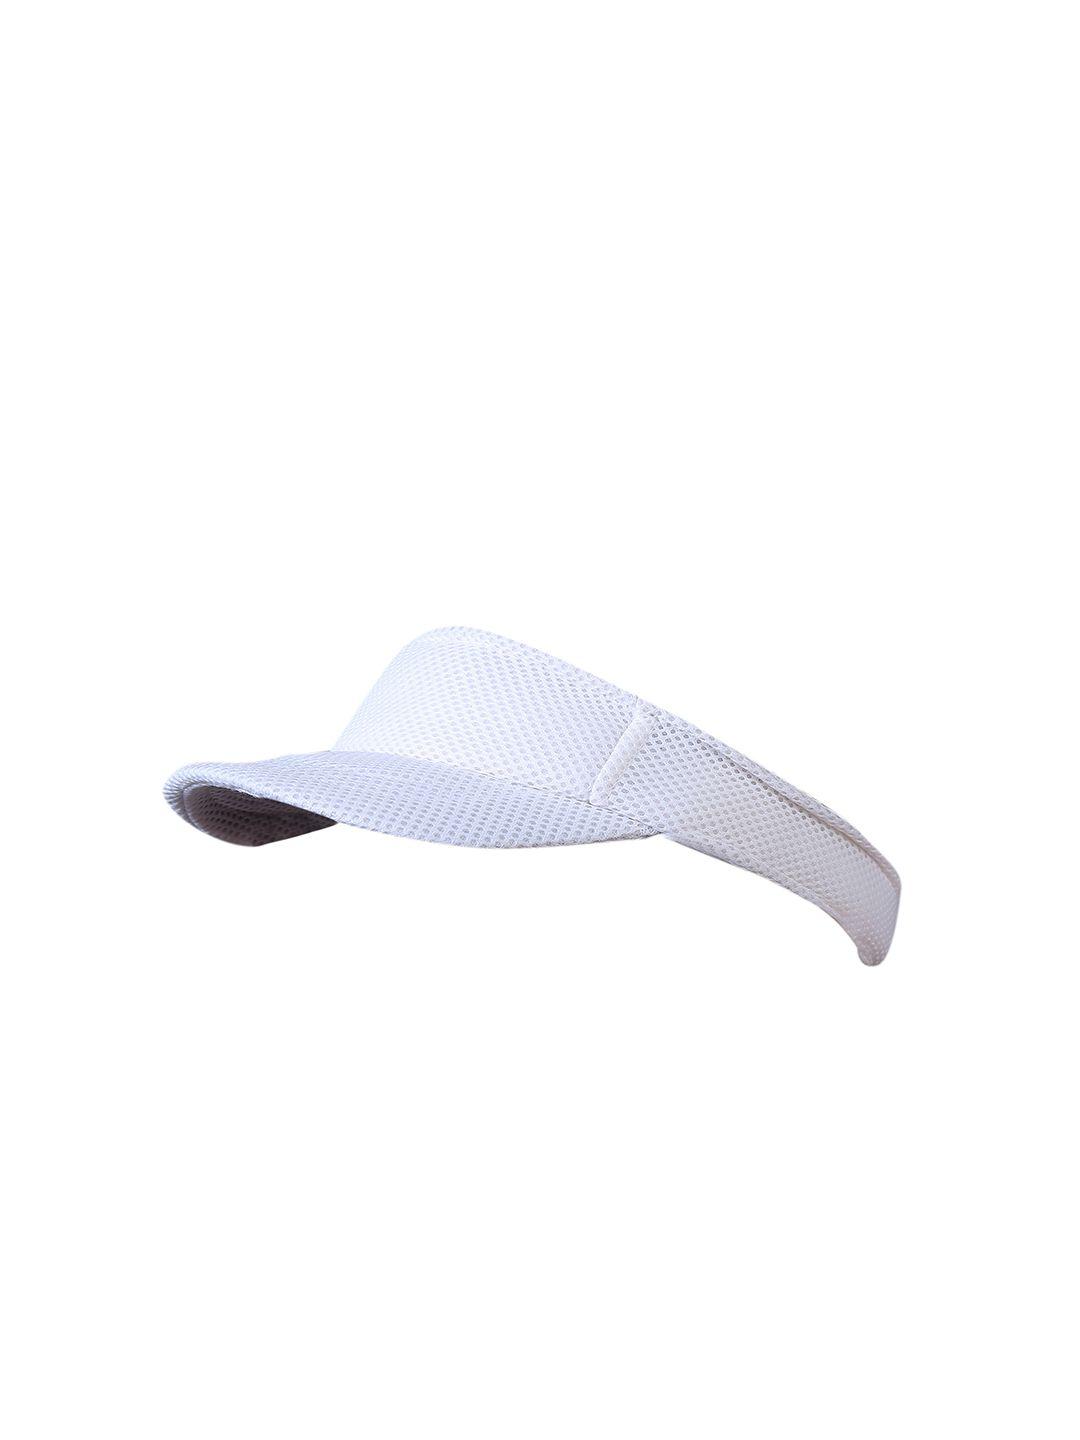 zacharias sunshade visor tennis cap